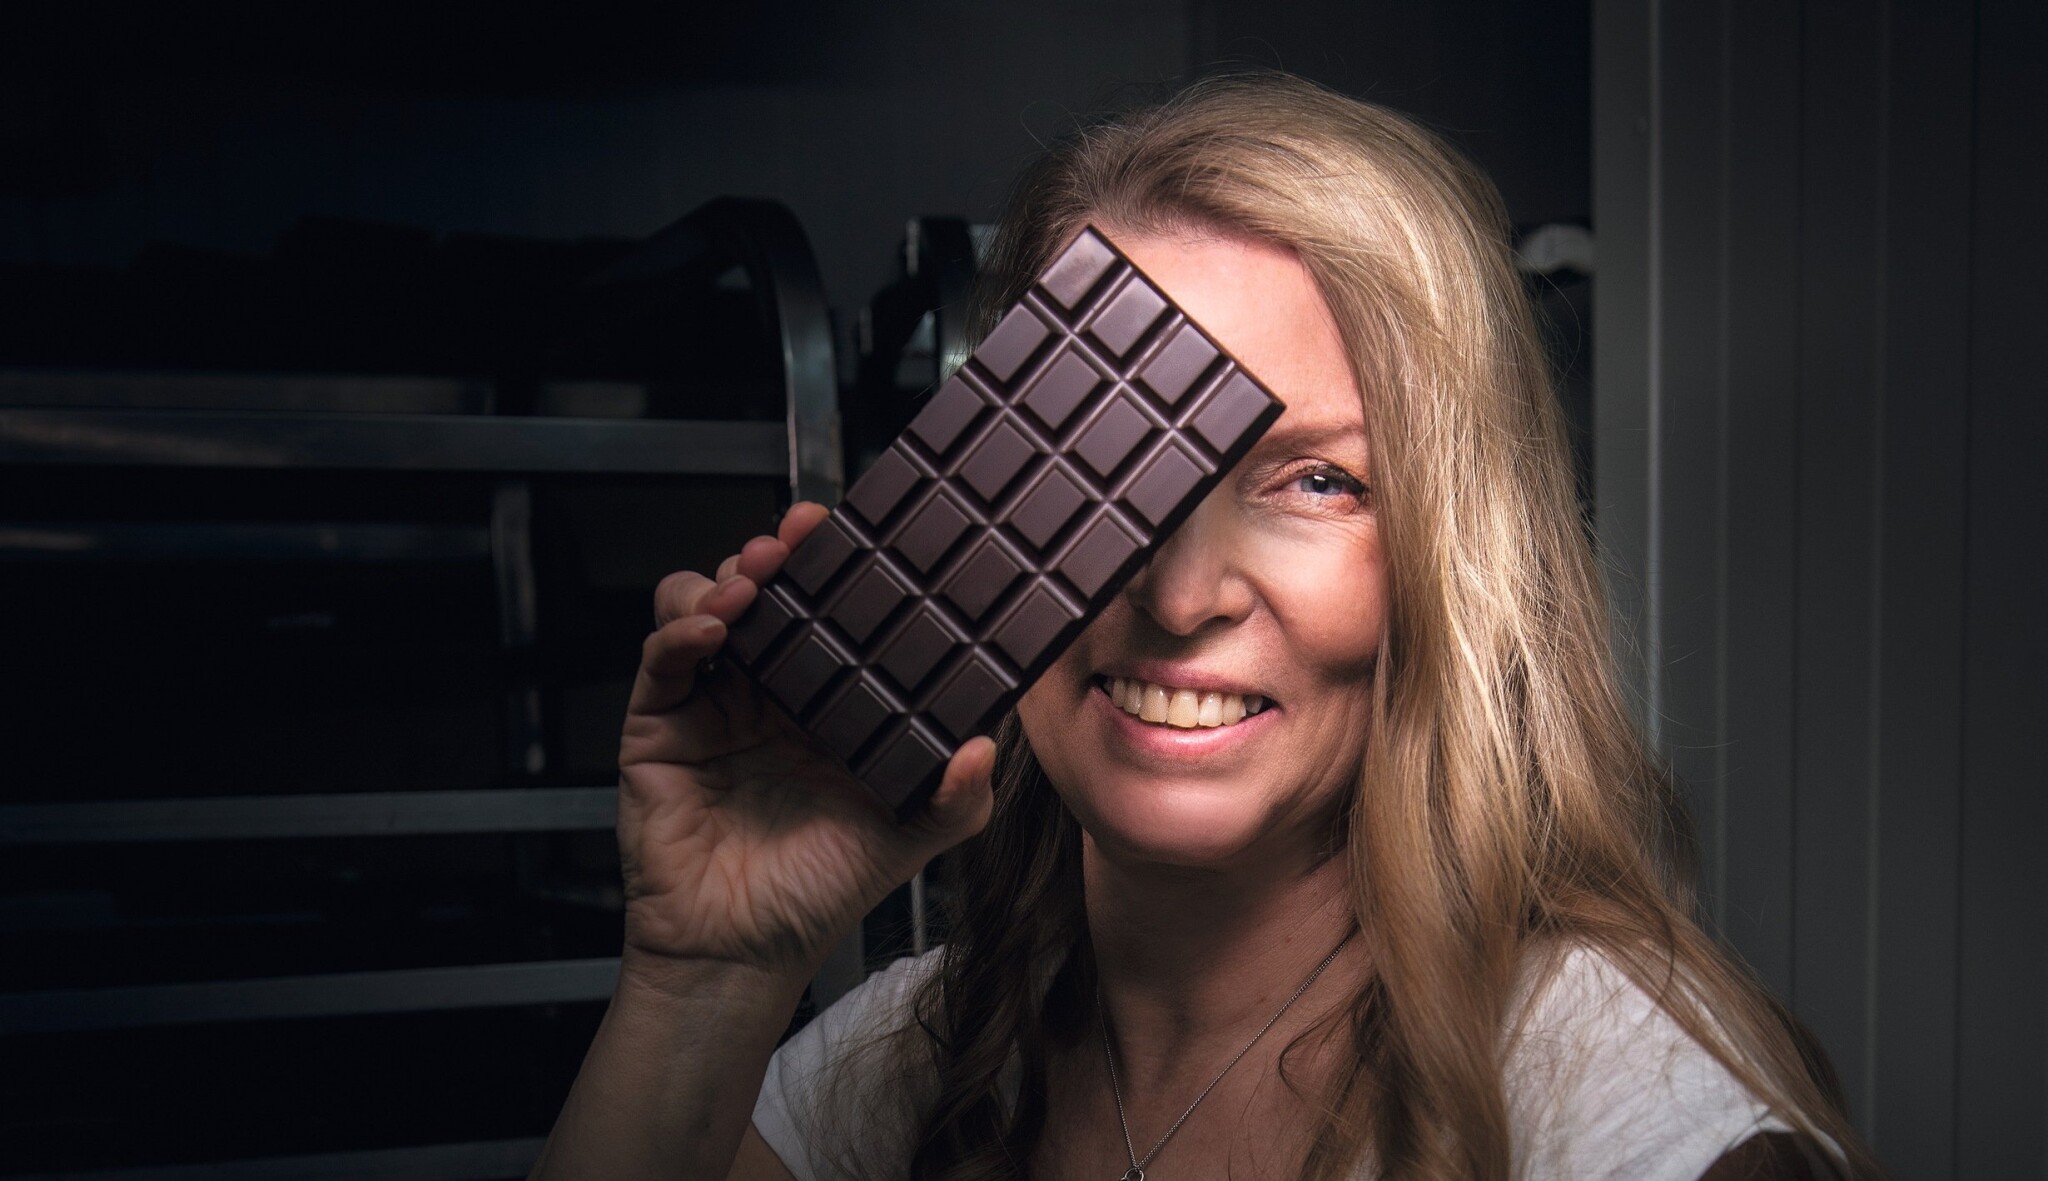 Jak má chutnat pravá čokoláda? Složení nesmí připomínat telefonní seznam, říká zakladatelka oceňované značky